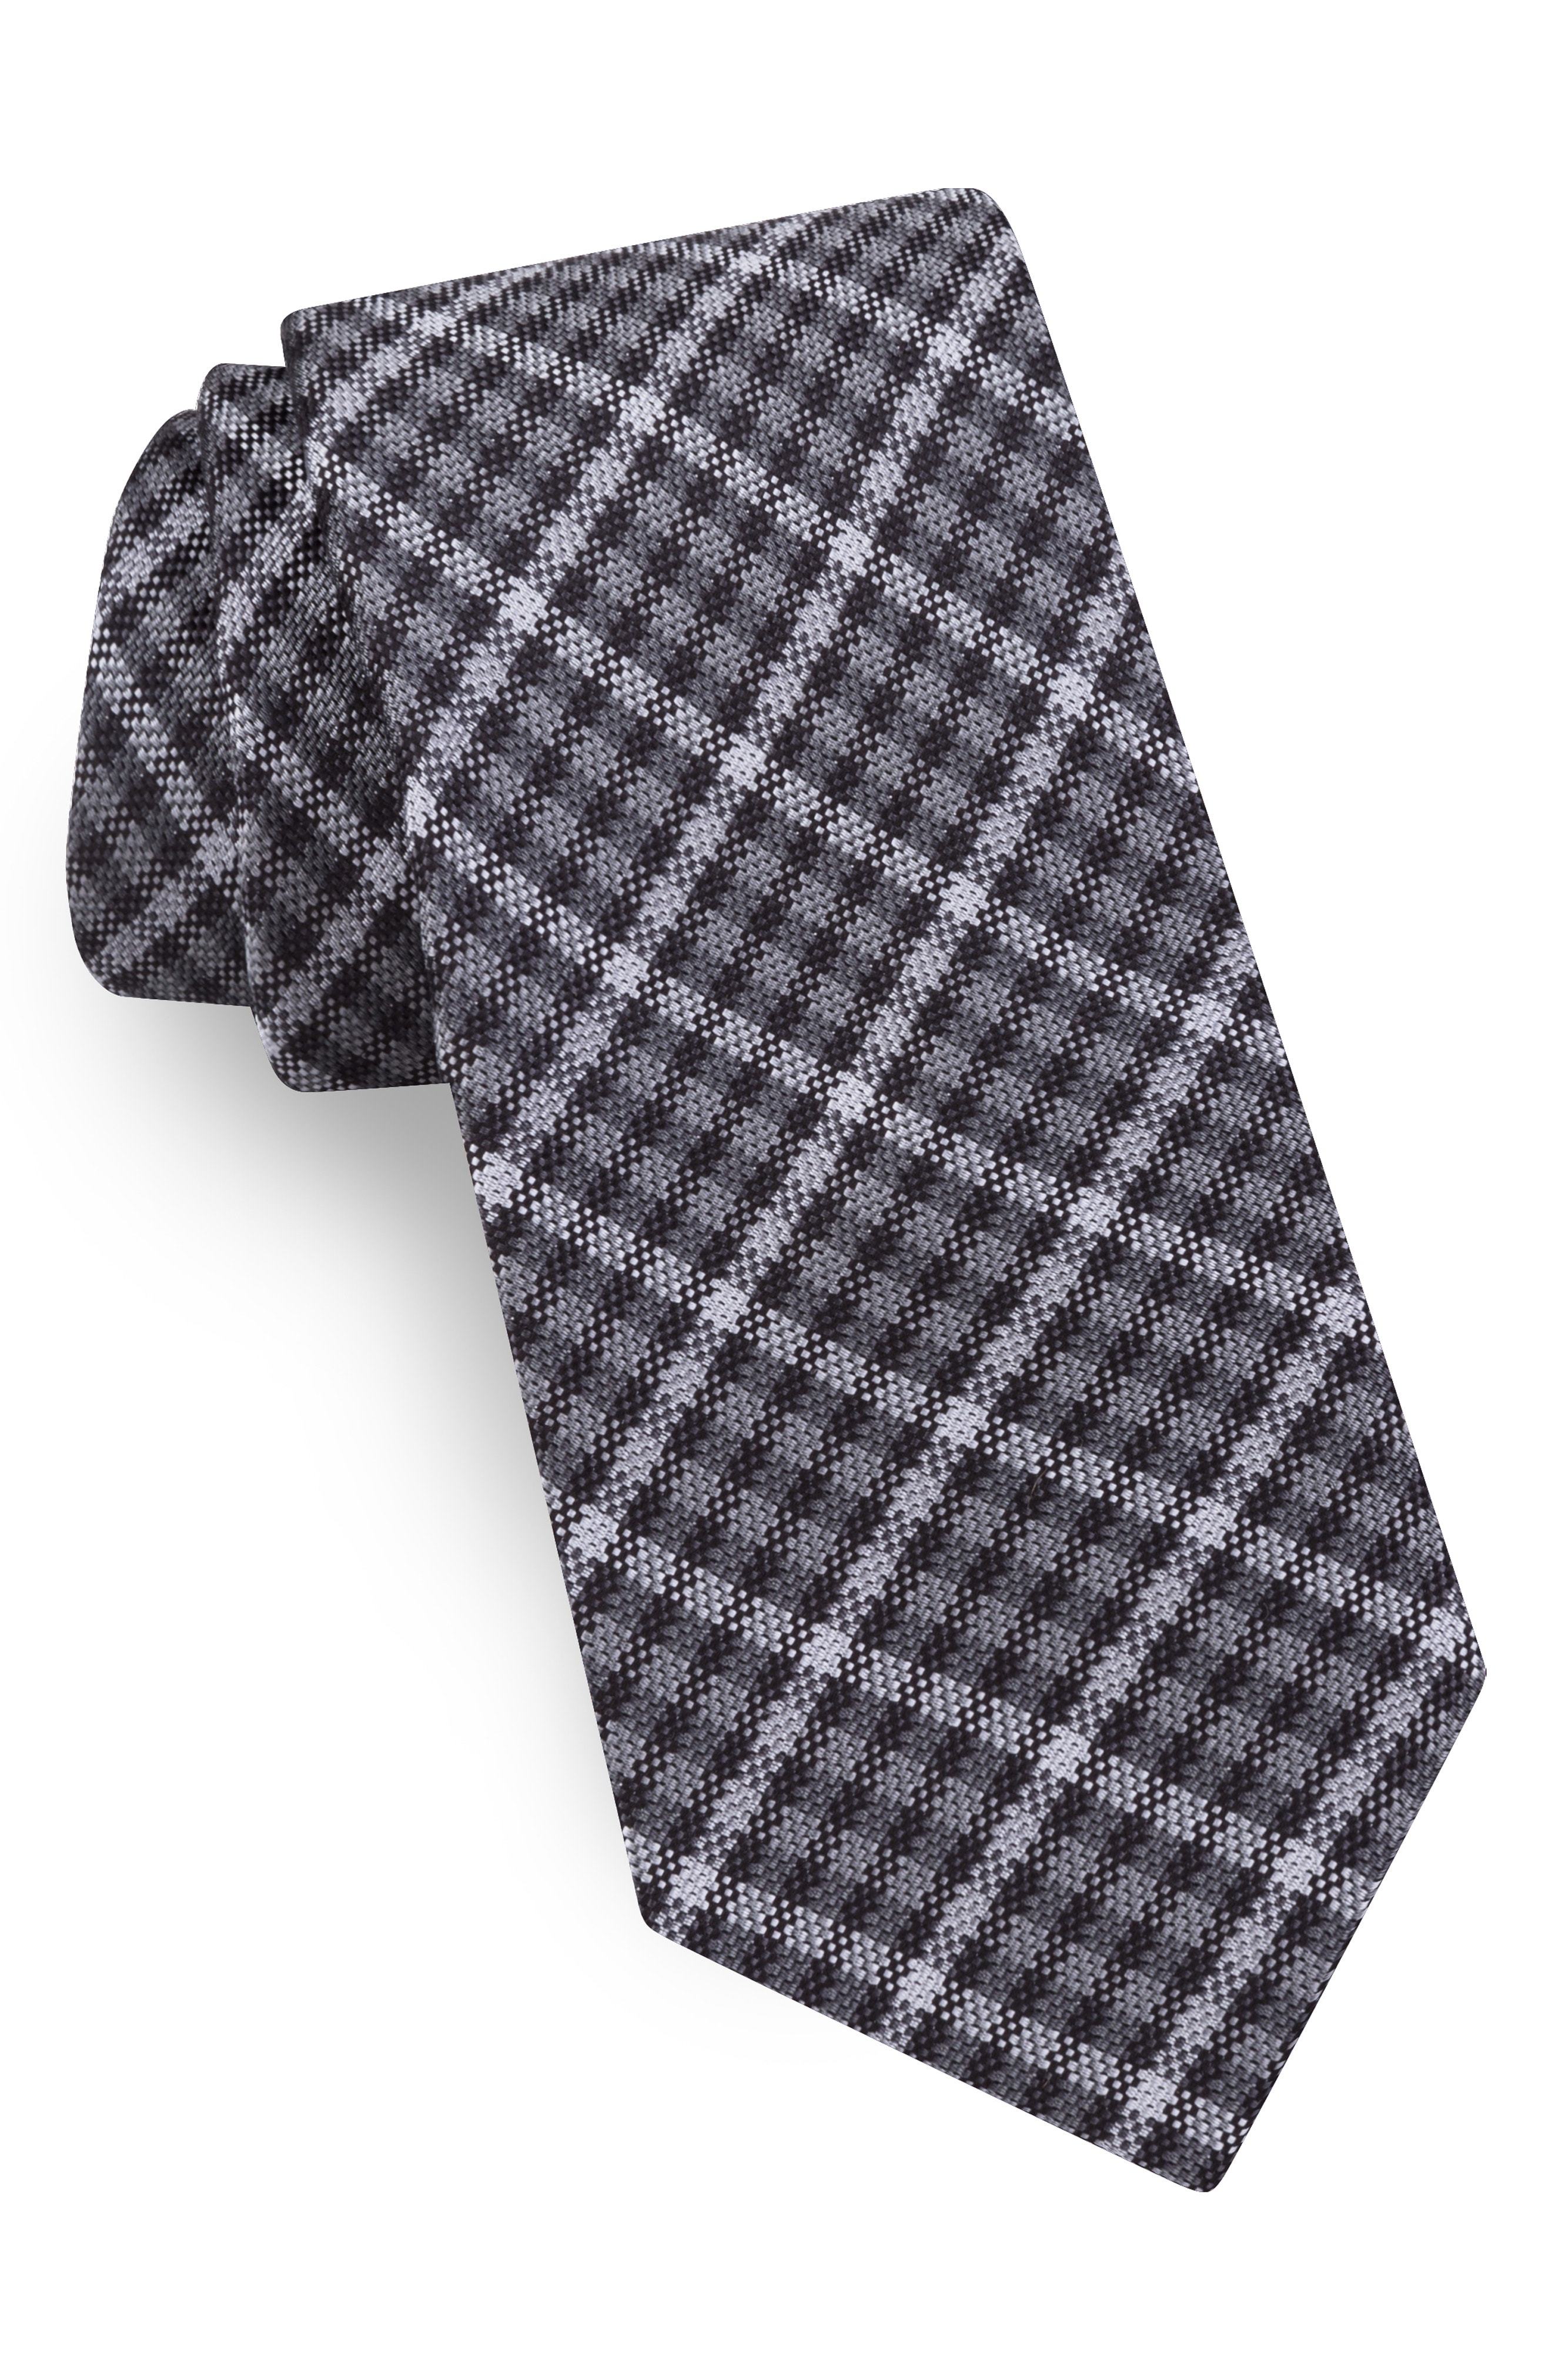 Luxury Damier Quilted Plaid Silk European Style Necktie For Men In